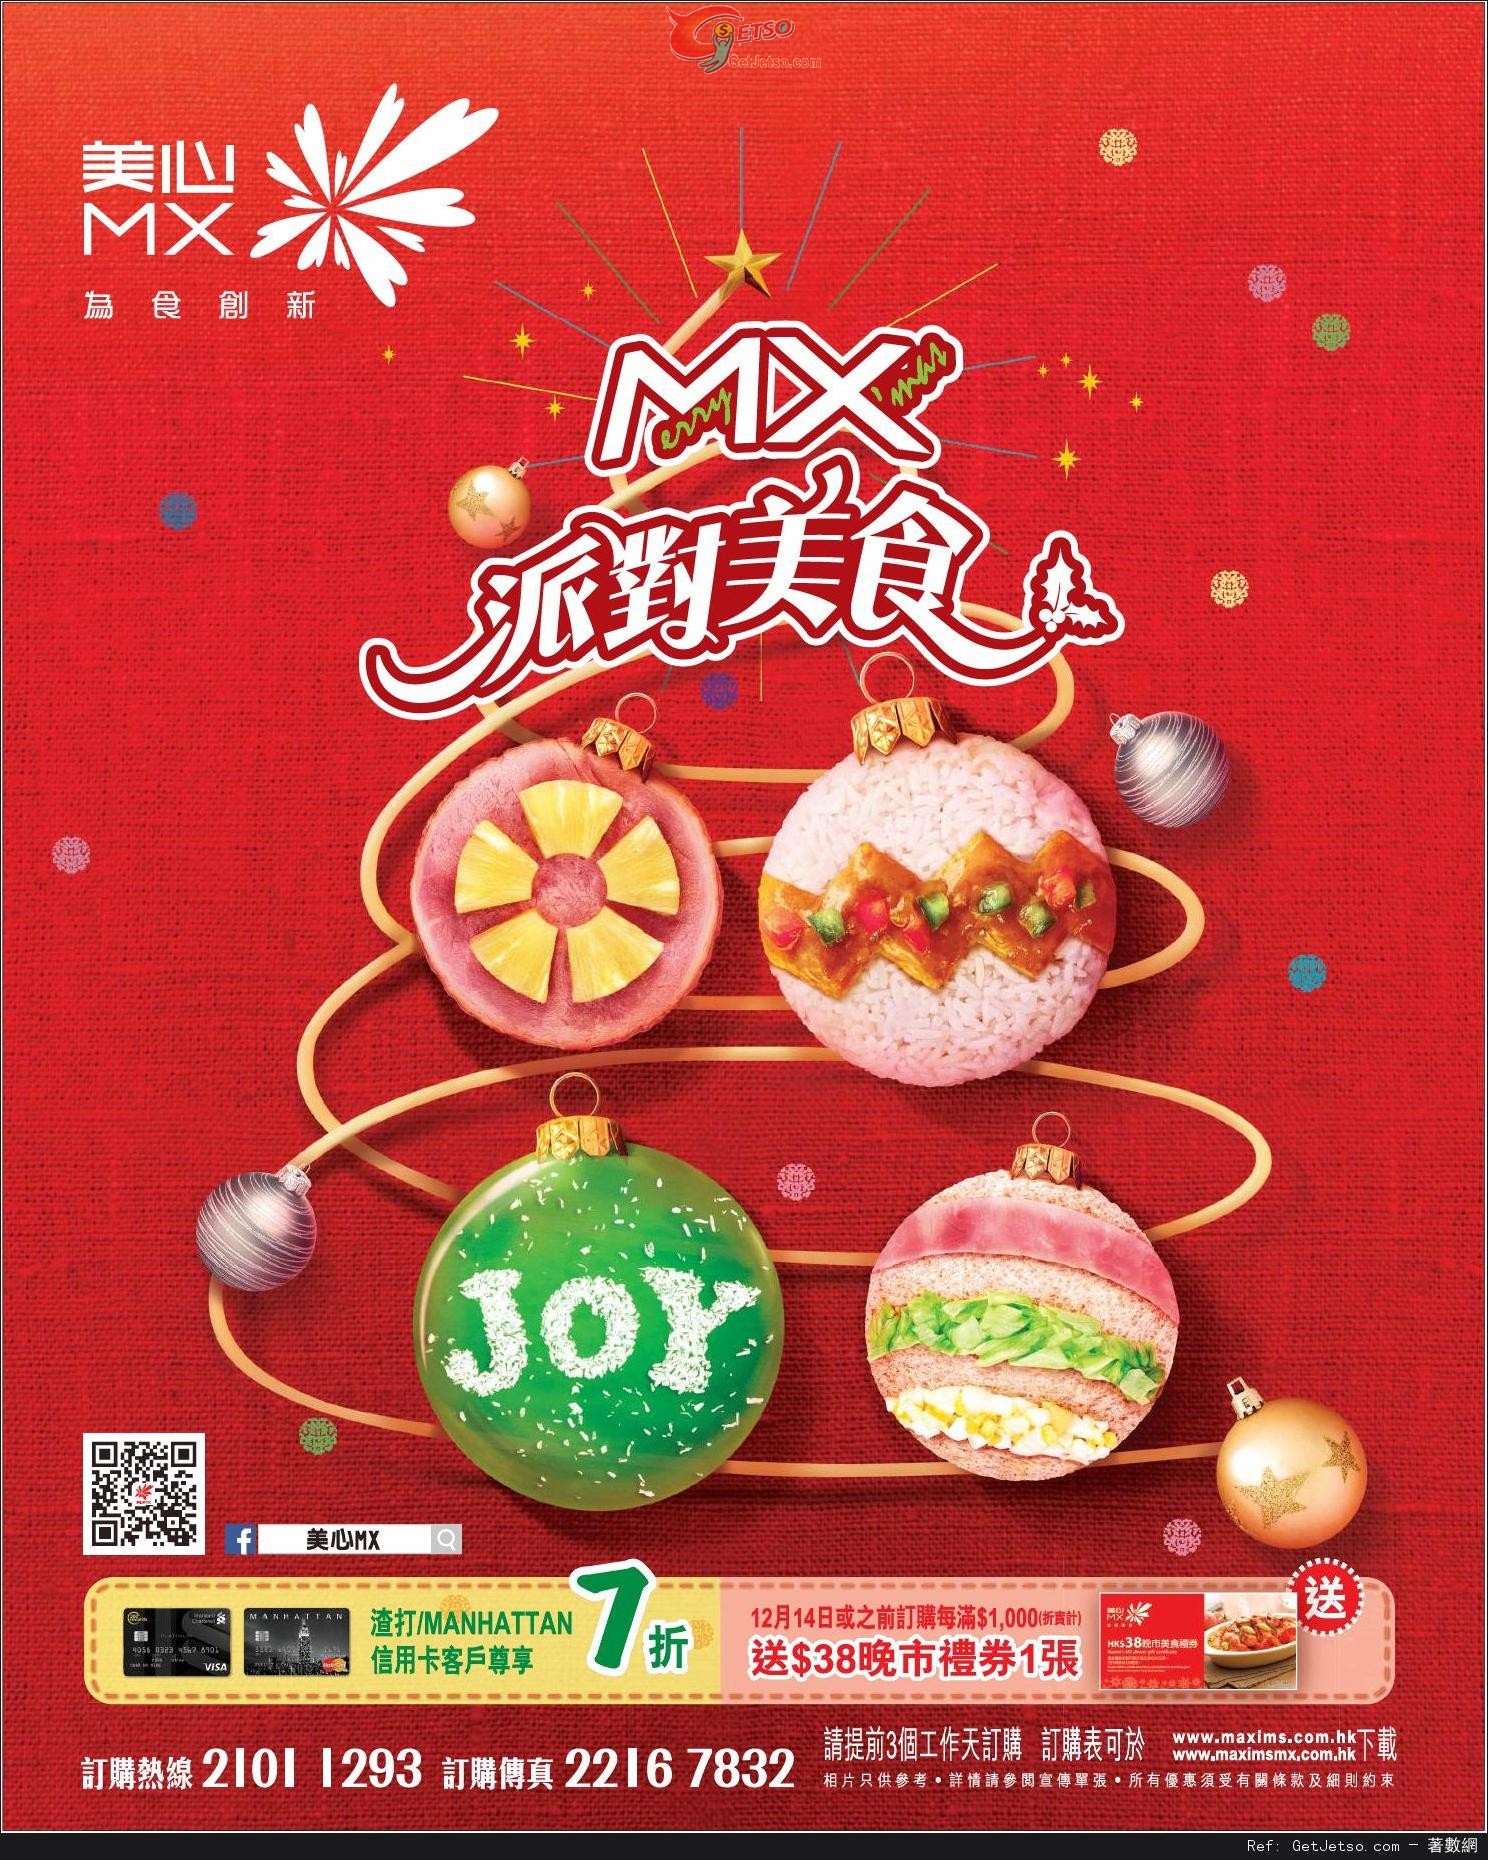 渣打信用卡享美心MX 聖誕派對美食7折優惠(至15年1月5日)圖片1